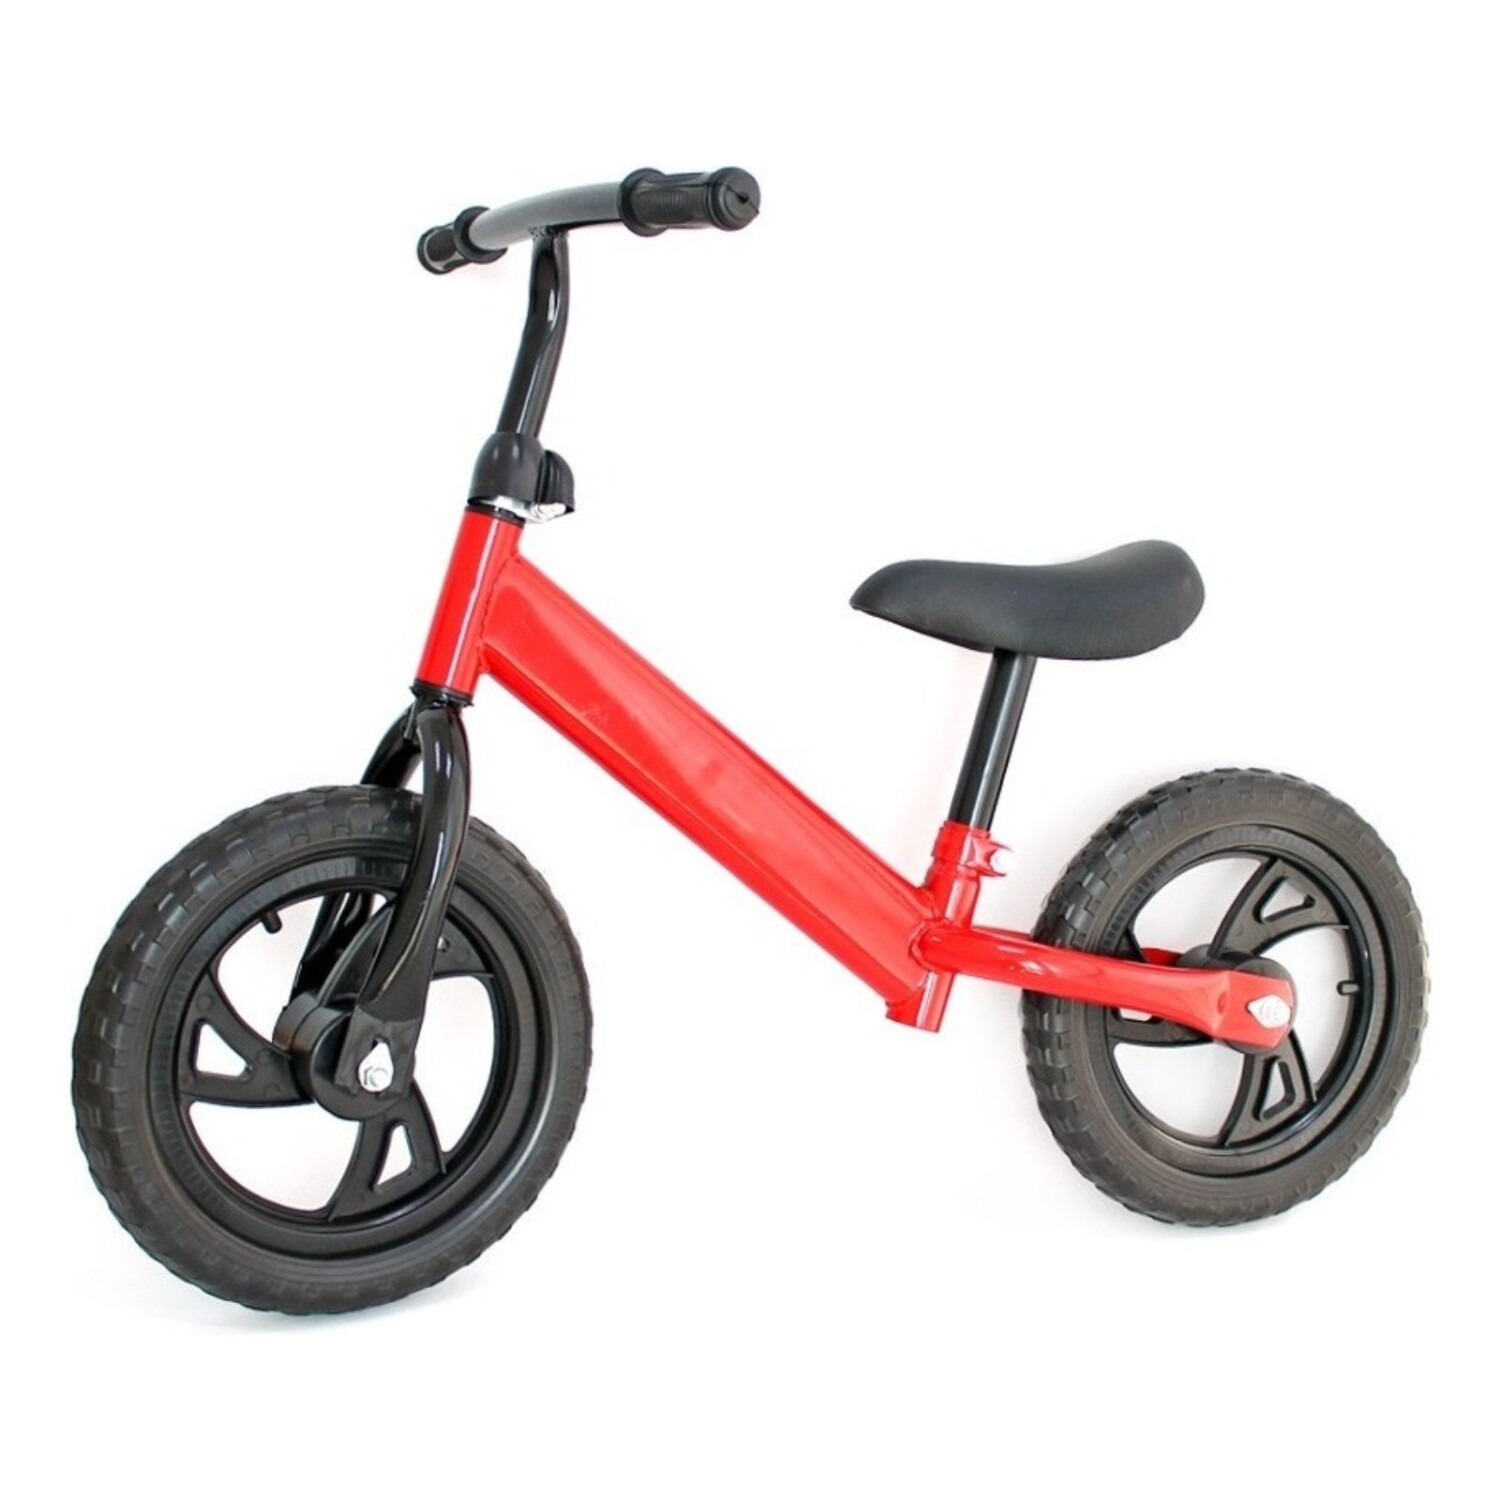 Bicicleta sin pedales Inspyre Rocket 12'' Rojo / Blanco 2022 2 - 4 años